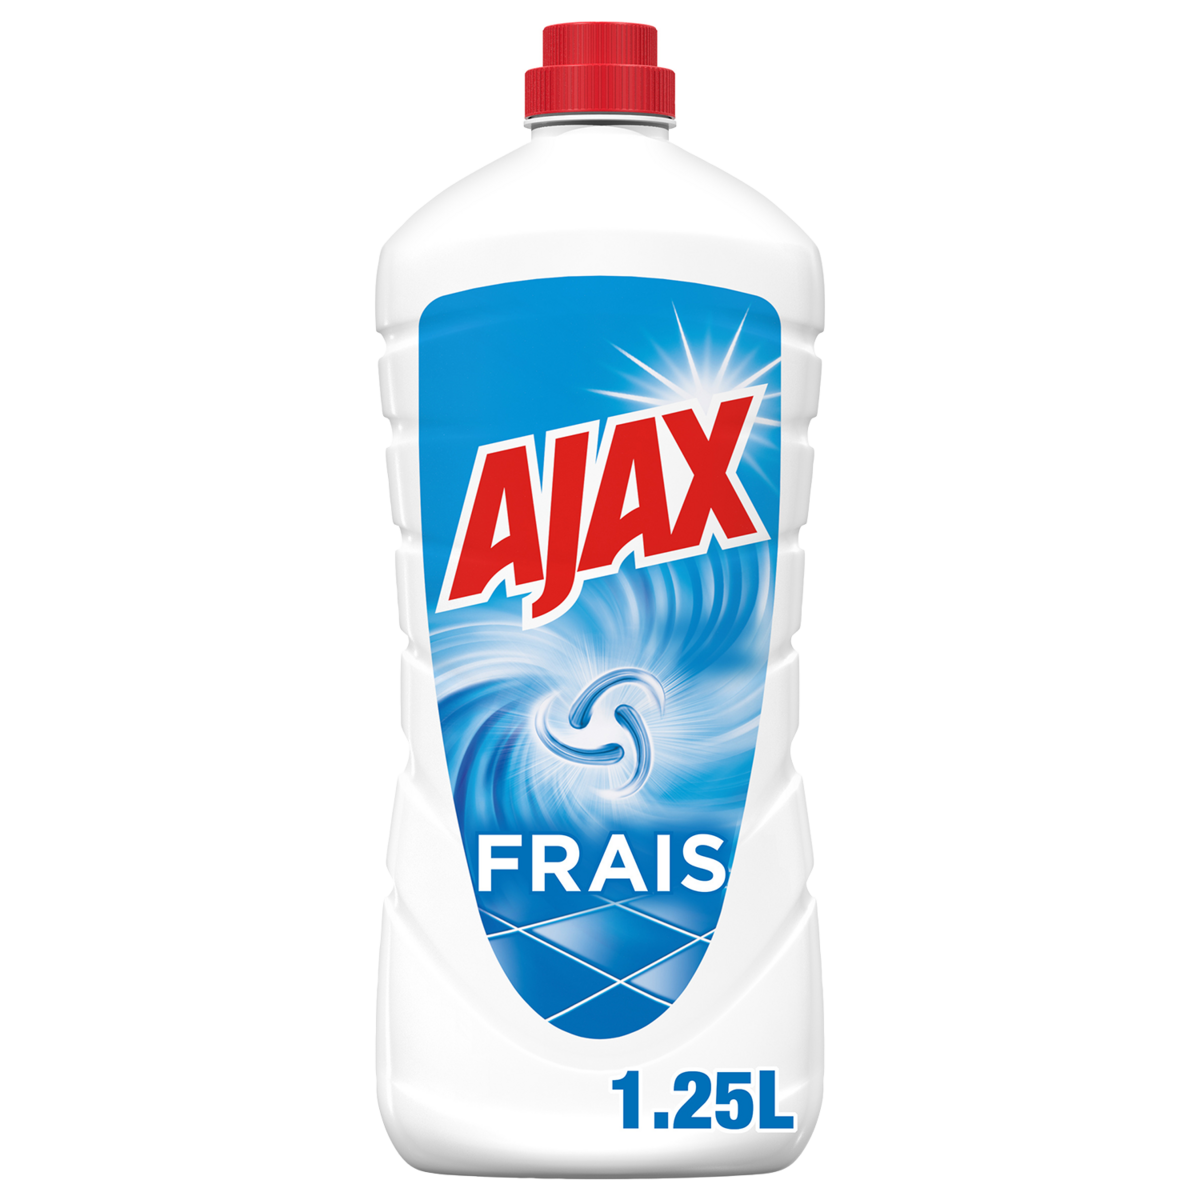 AJAX Nettoyant multi-surfaces traditionnel original parfum frais 1,25l